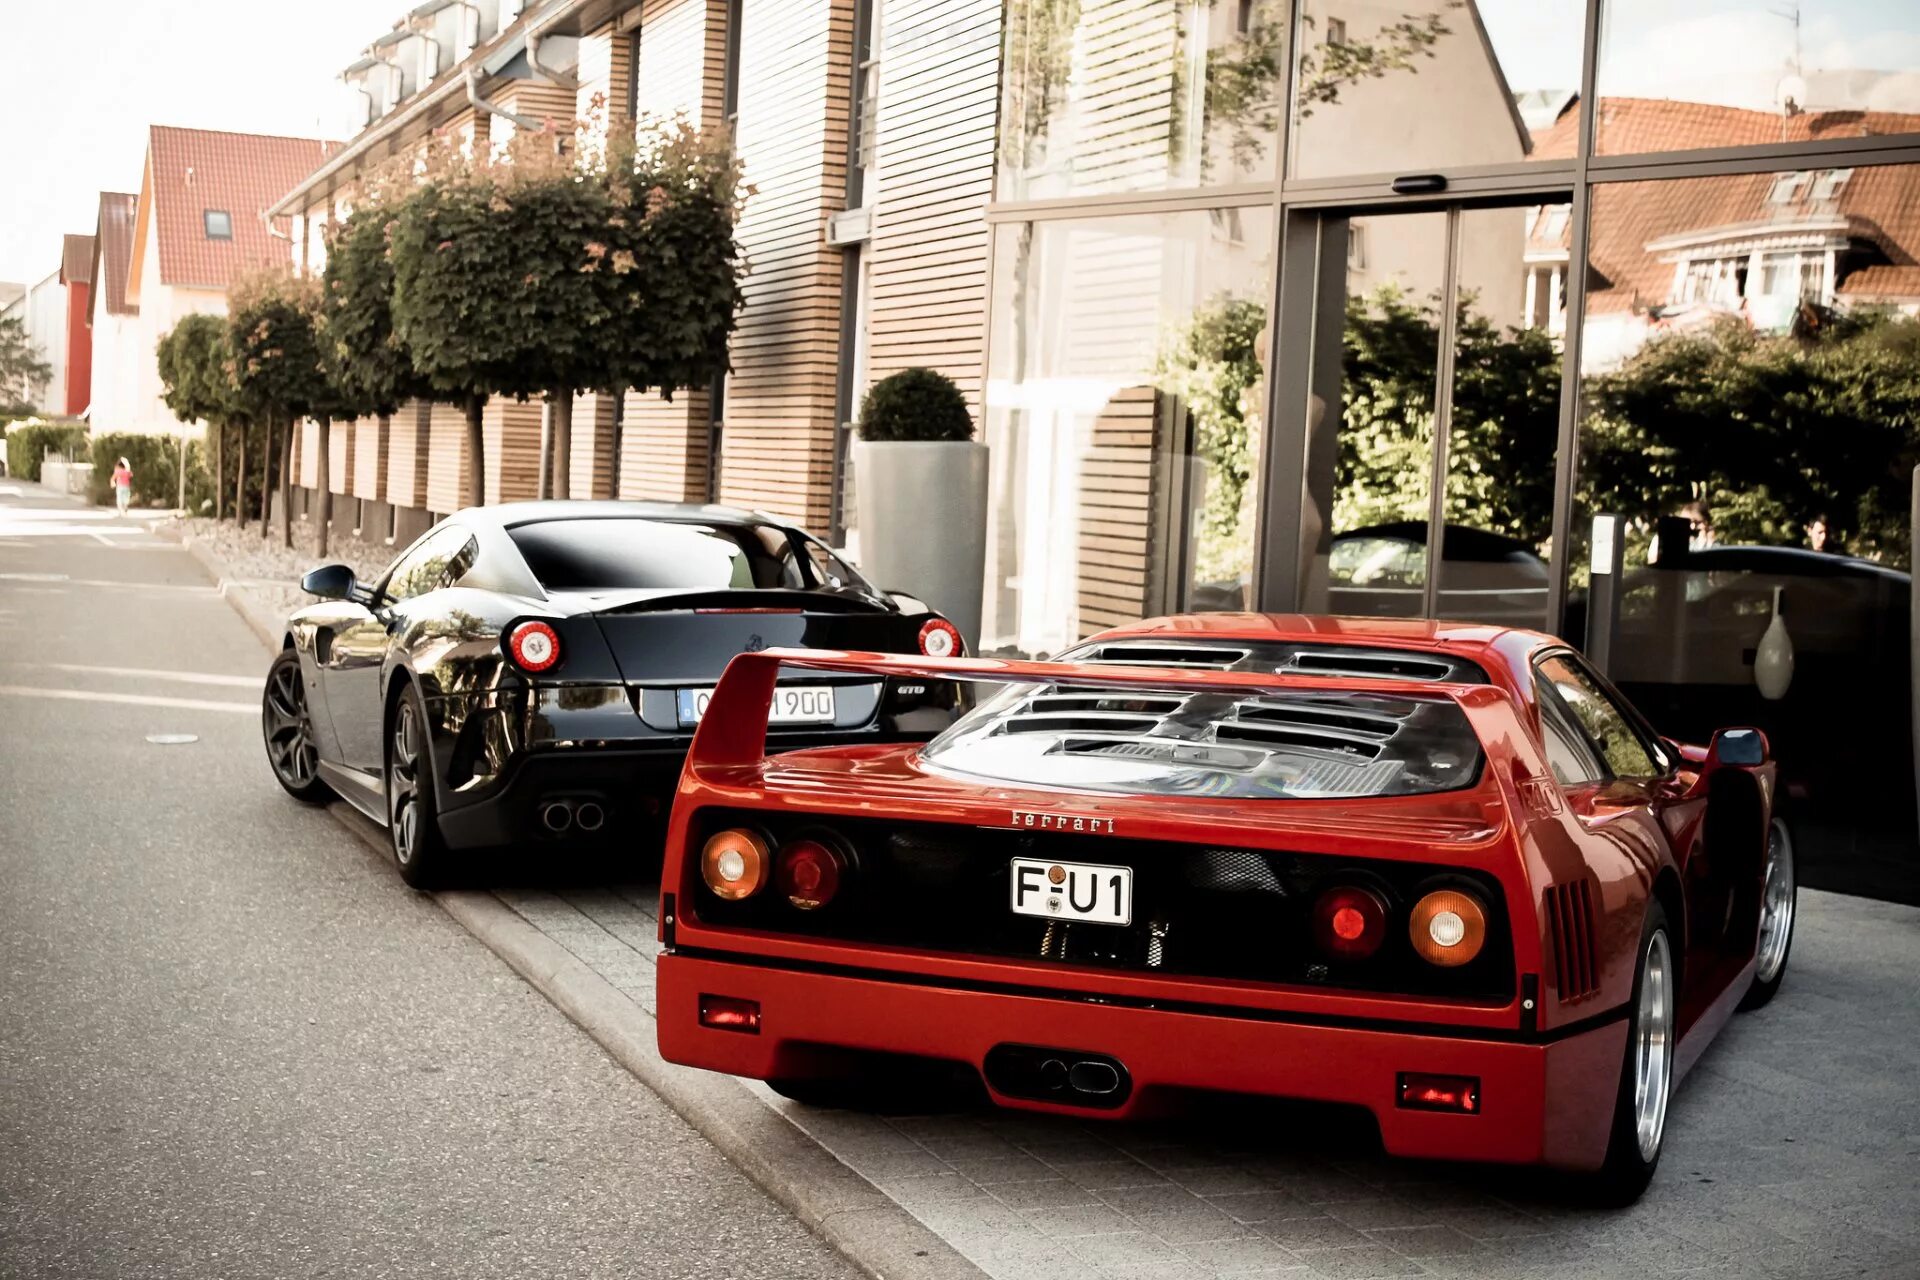 Ф ые. Ferrari f40. Машина Ferrari f40. Ferrari f40 черная. Ferrari f40 HD.